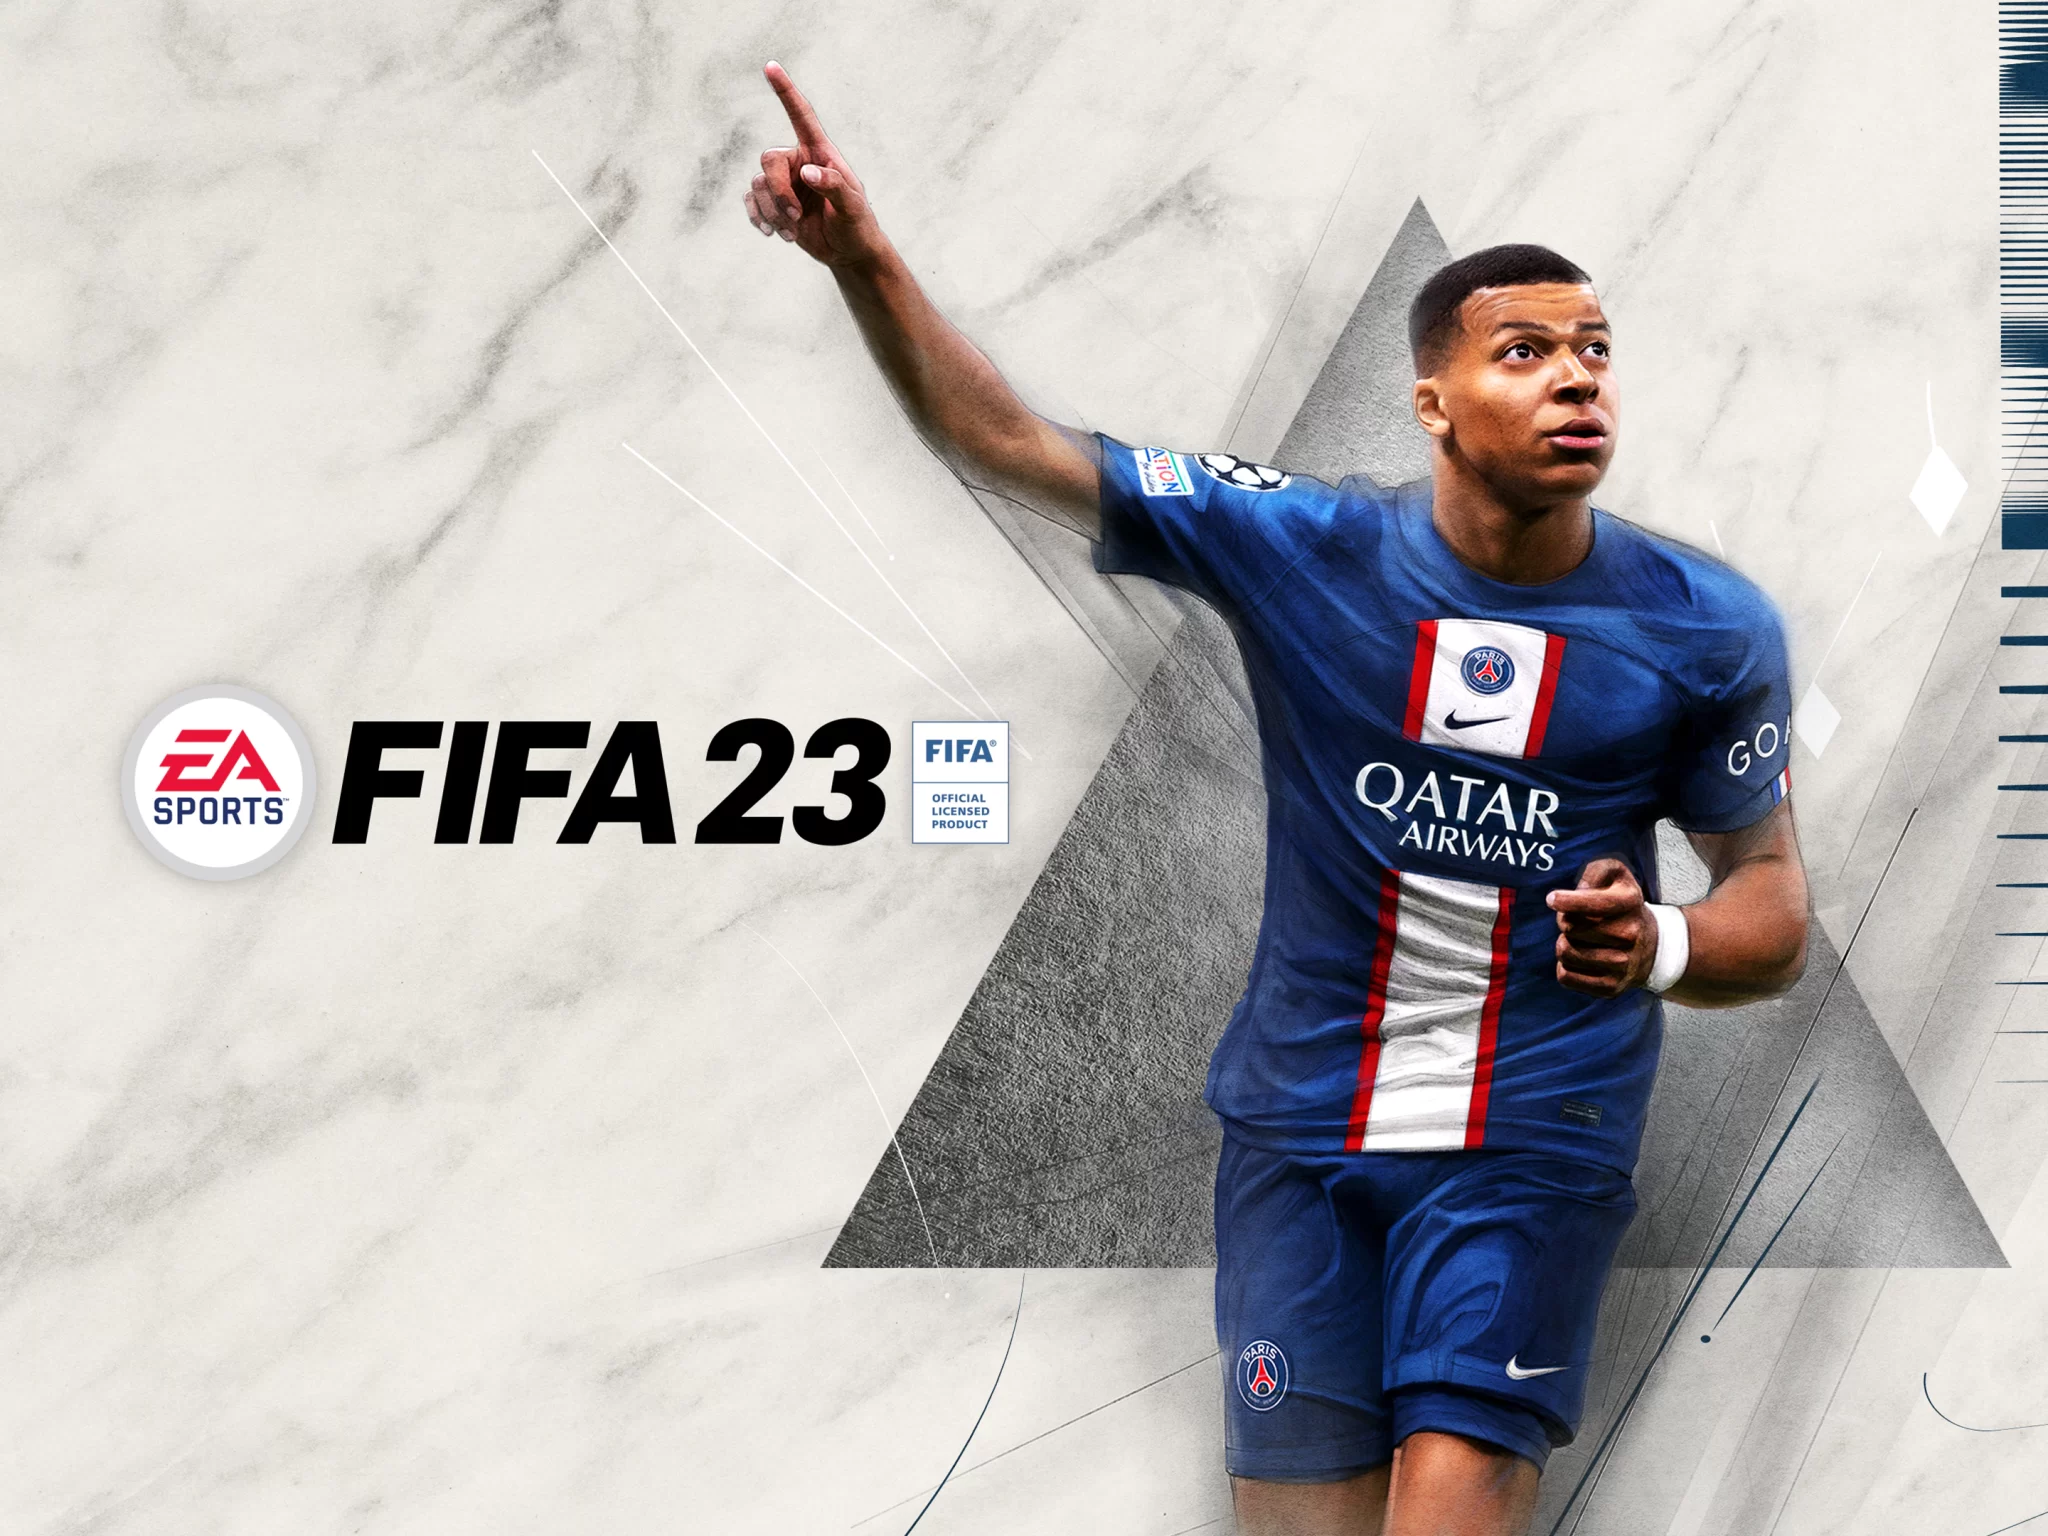 فيفا FIFA 23 تشهد إضافة كأس العالم وعودة Ultimate Team عبر تطبيقها الجديد| كيفية اللعب وأسعار الشراء